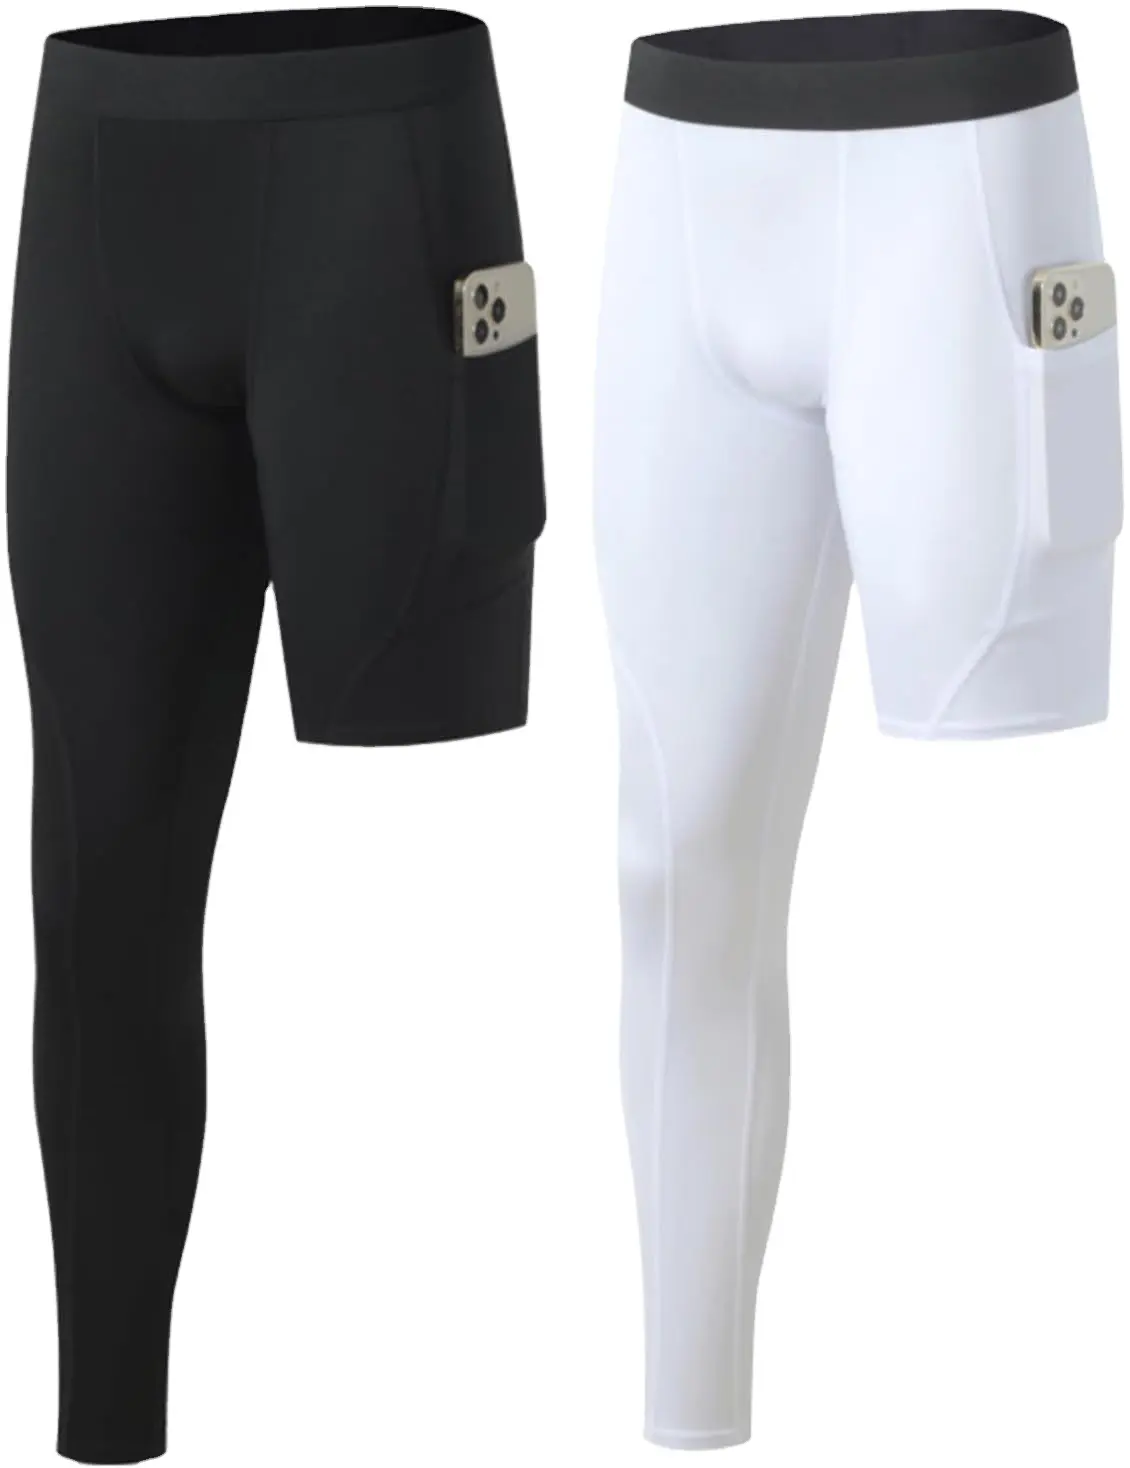 Calças compridas esportivas masculinas de alta qualidade, calças compridas respiráveis para treino de basquete e fitness, leggings esportivas